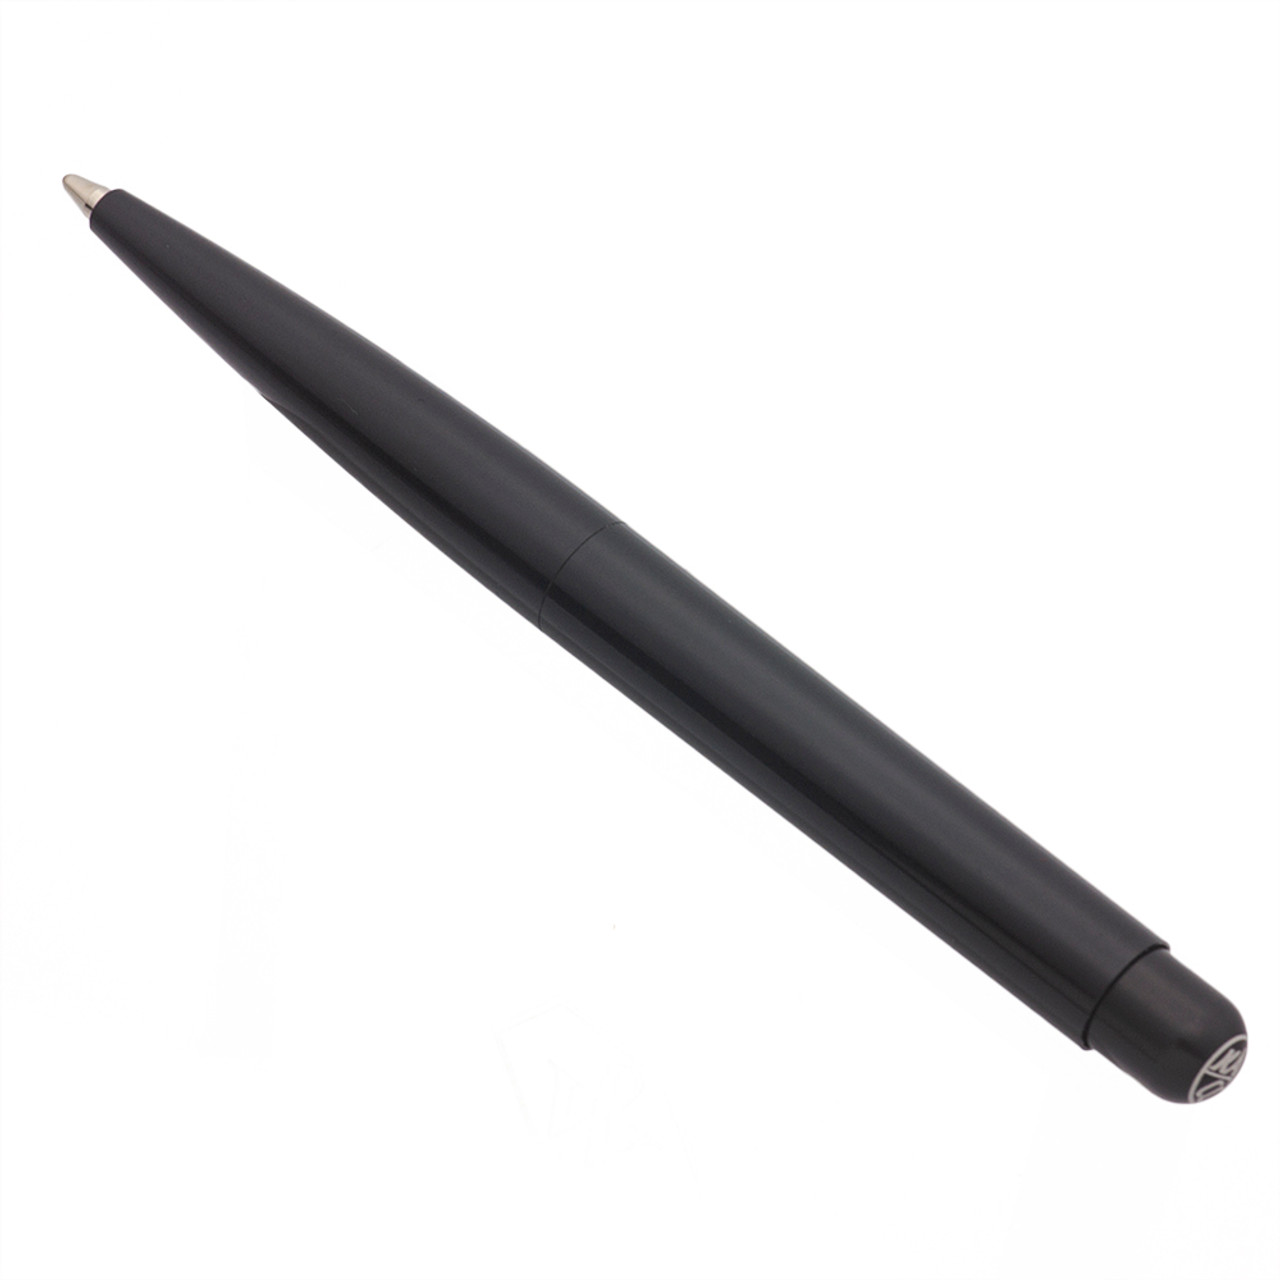 Kaweco Liliput Ballpoint Pen - Black  (Mint in Box w 2 Refills, Works Well)